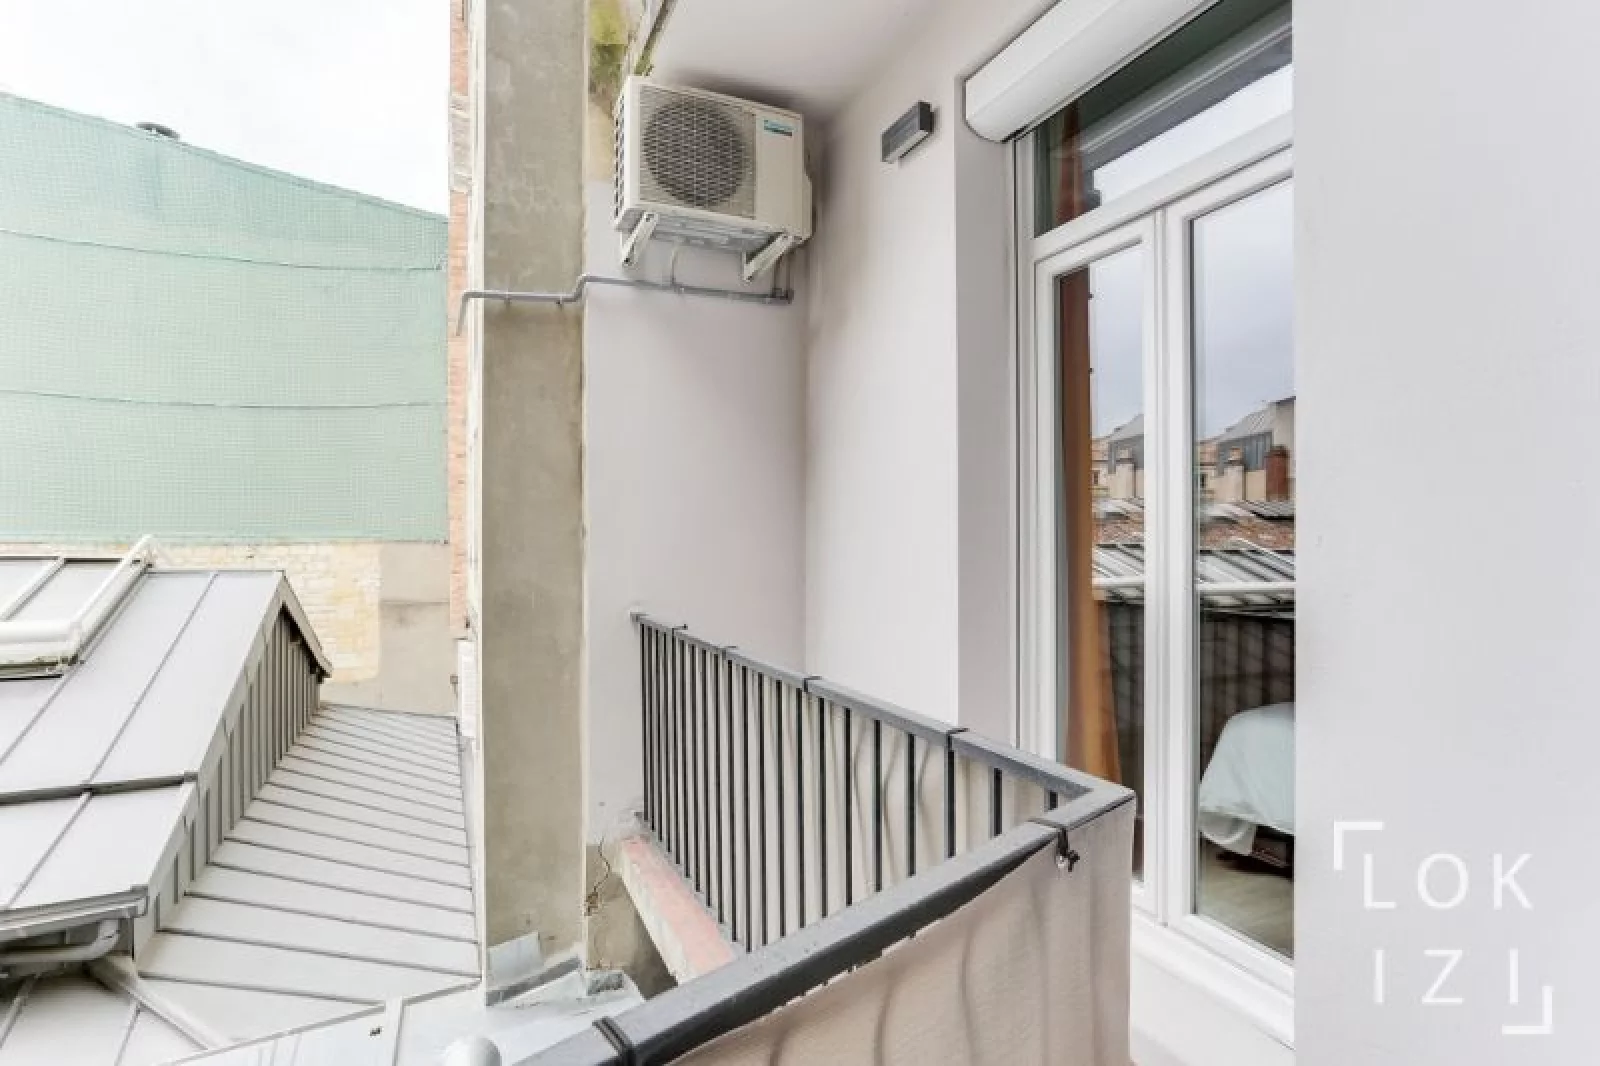 Location appartement T2 meublé 40m² (Bordeaux centre - Triangle d'or)